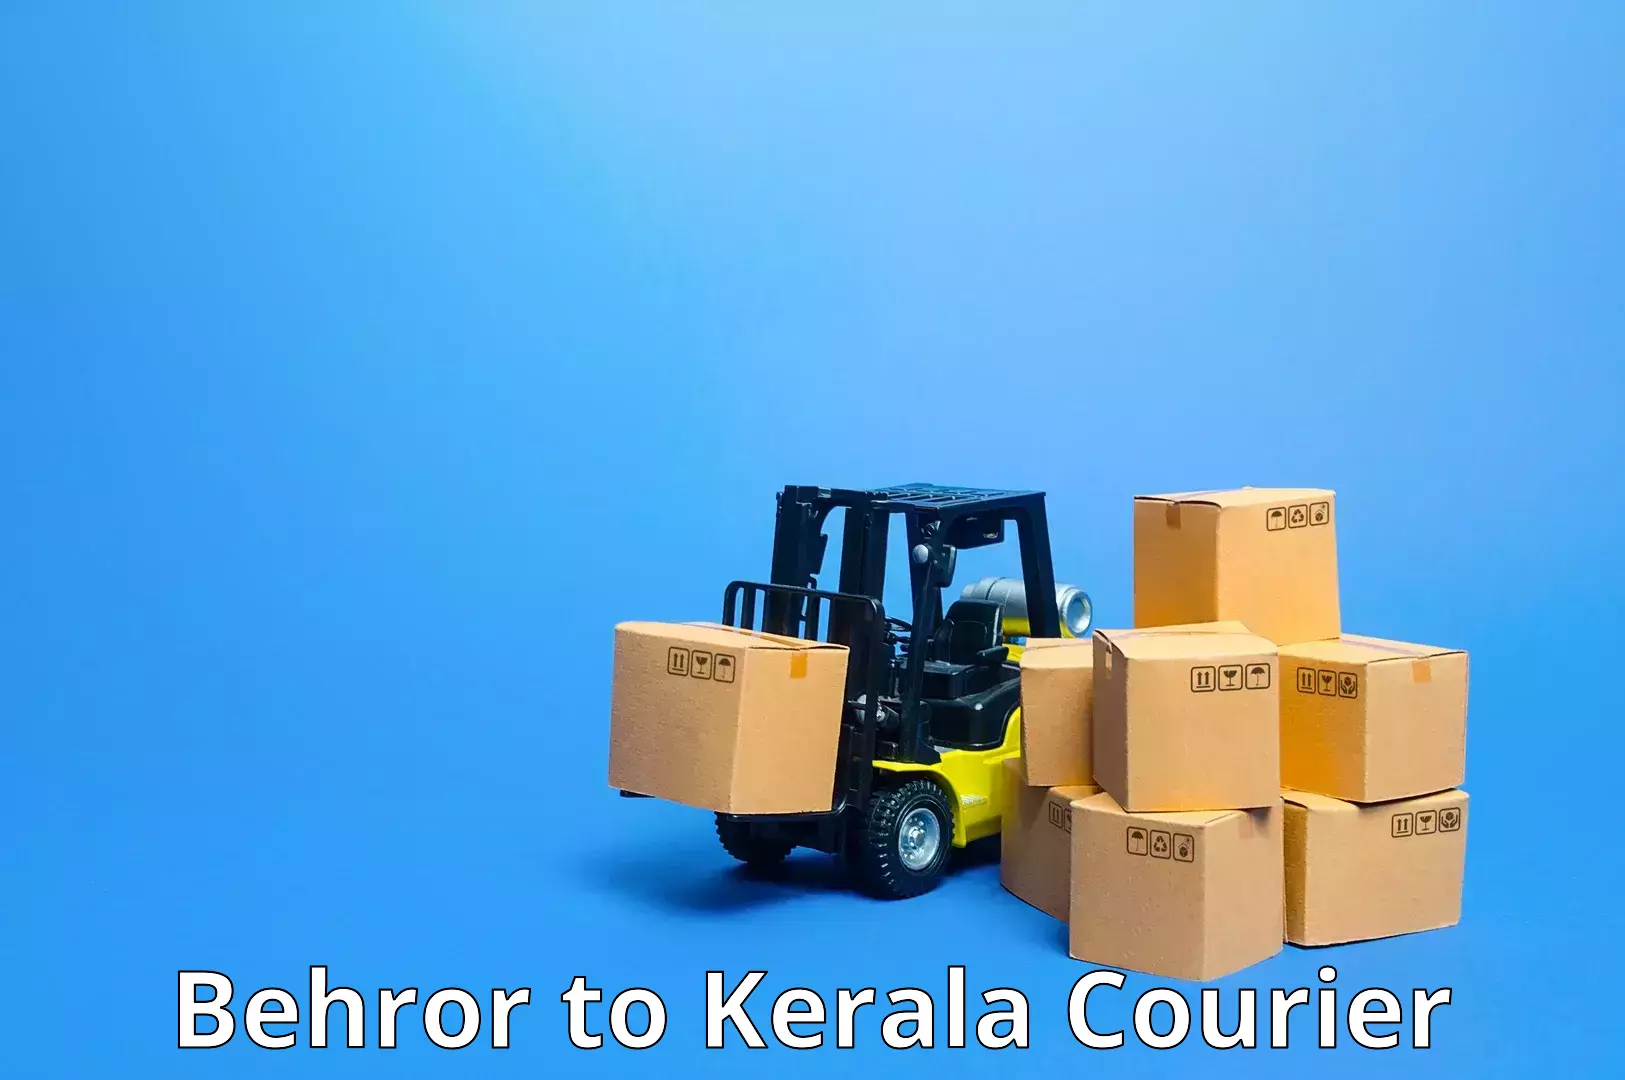 24-hour courier service in Behror to Pandikkad